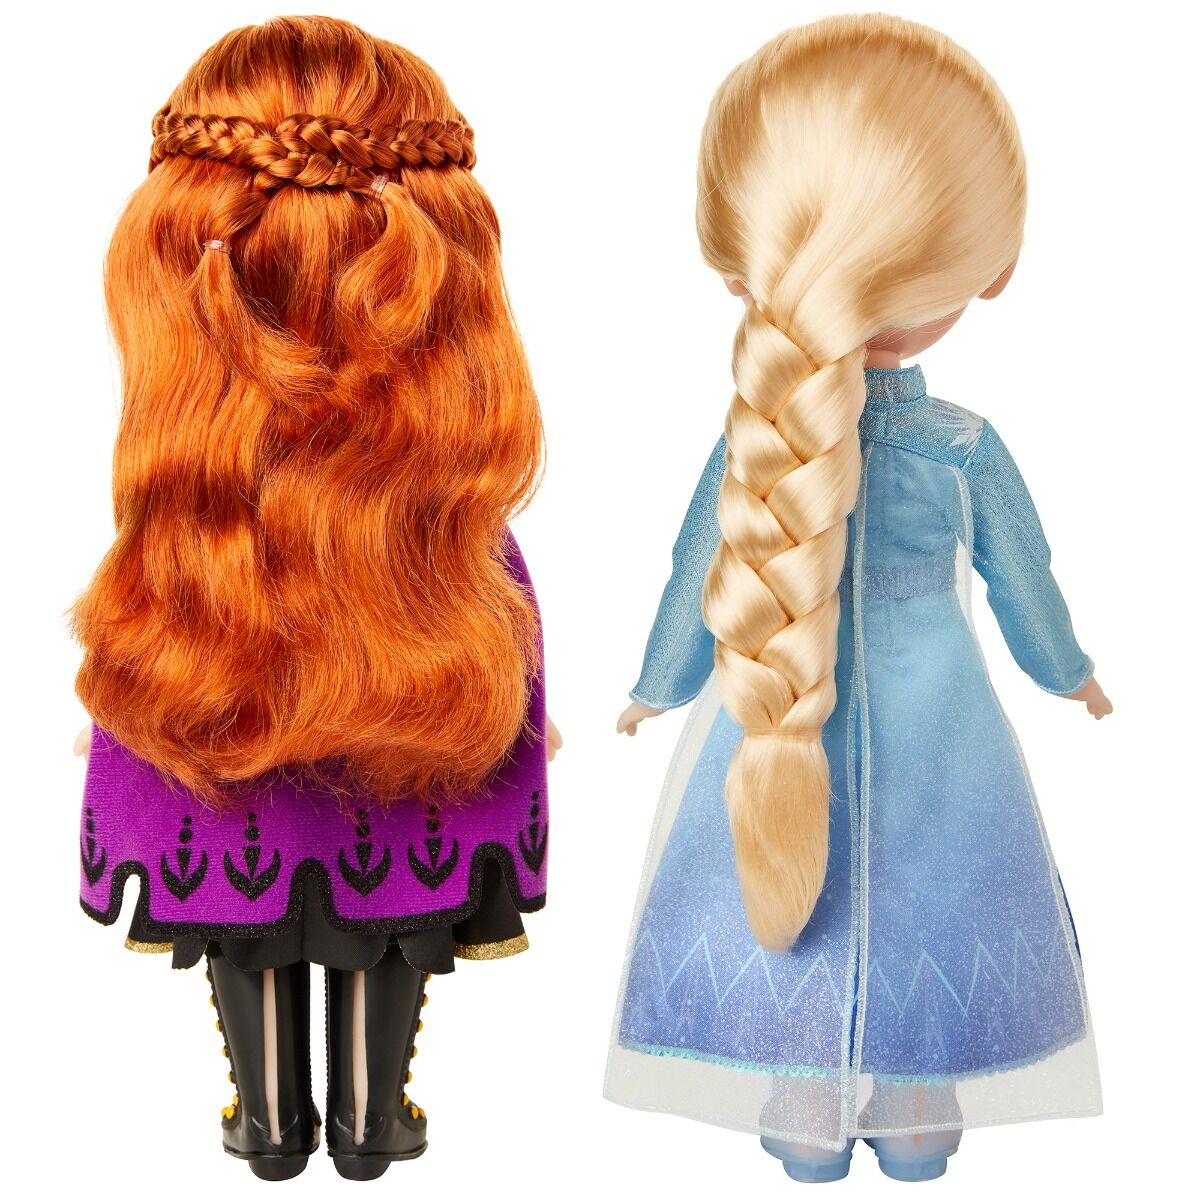 Set papusi Anna si Elsa, Disney Frozen